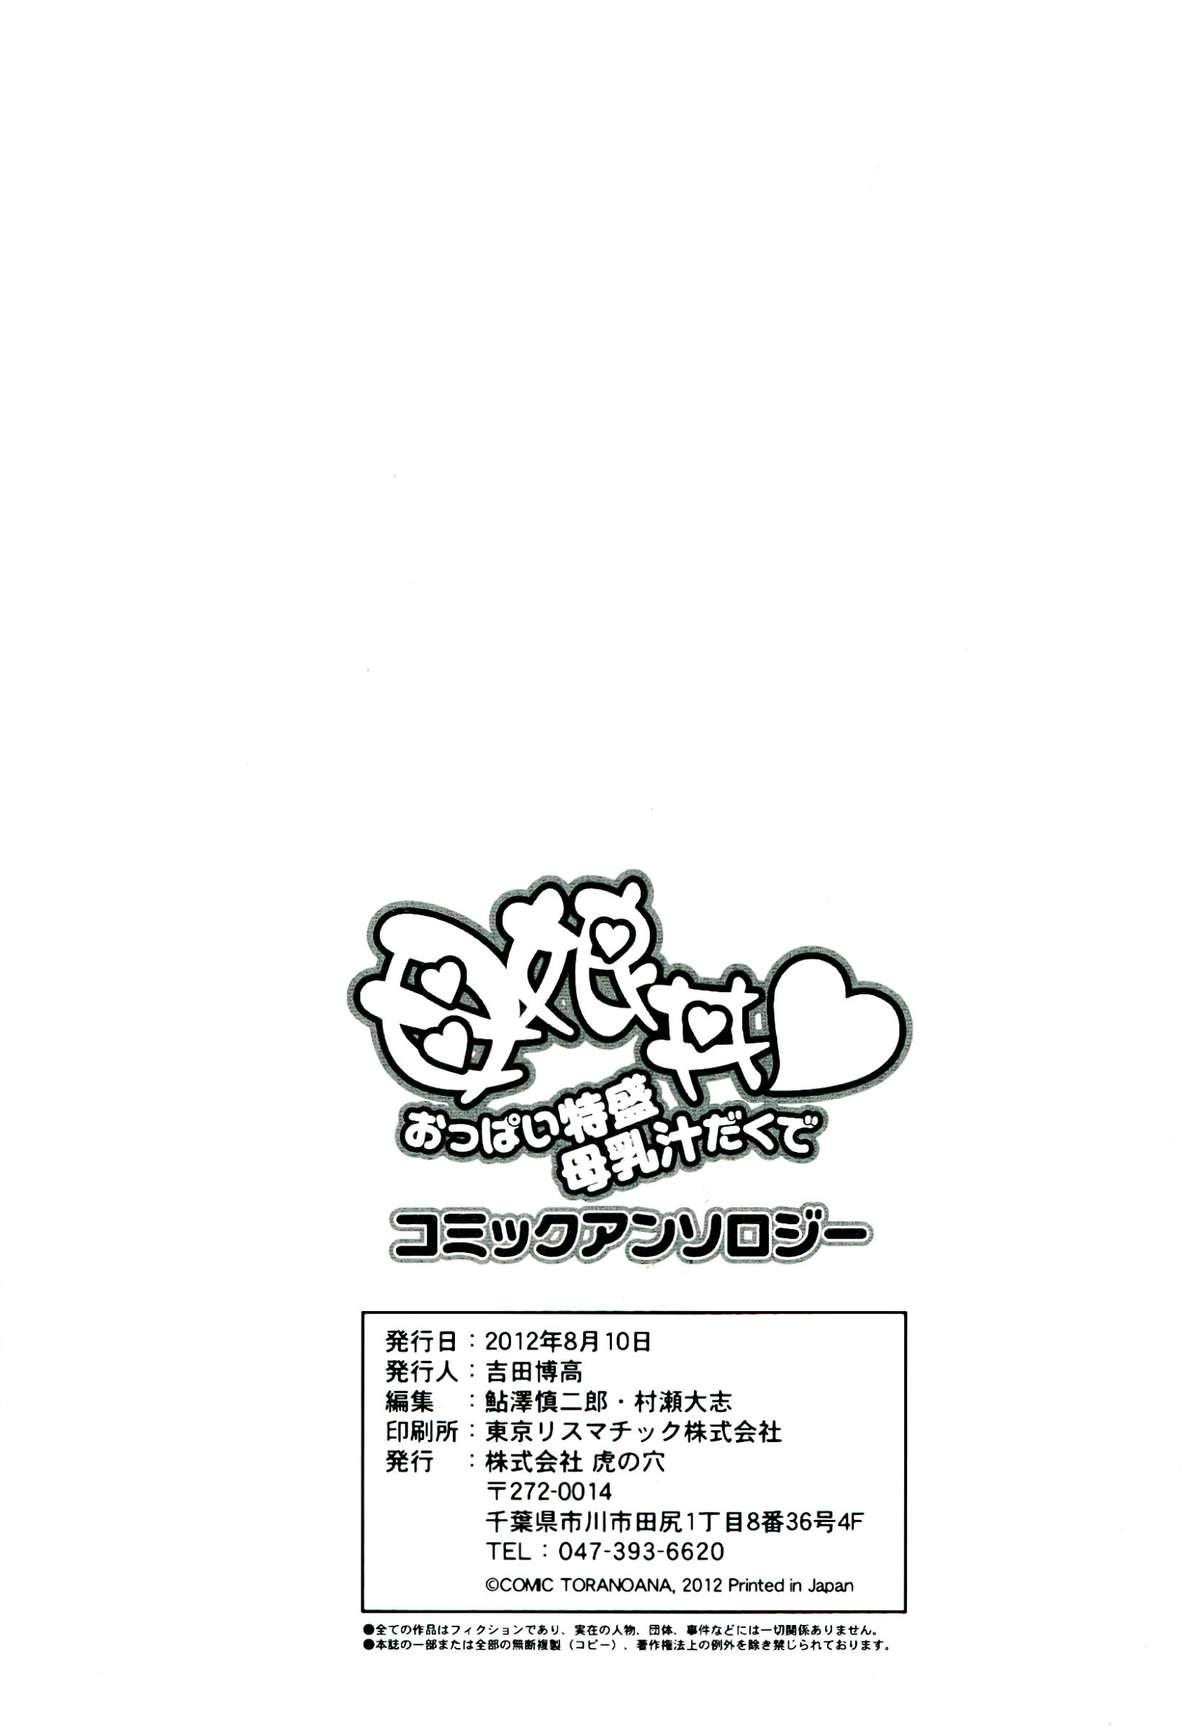 Oyako don Oppai Tokumori Bonyuu Shirudaku de Comic Anthology 90